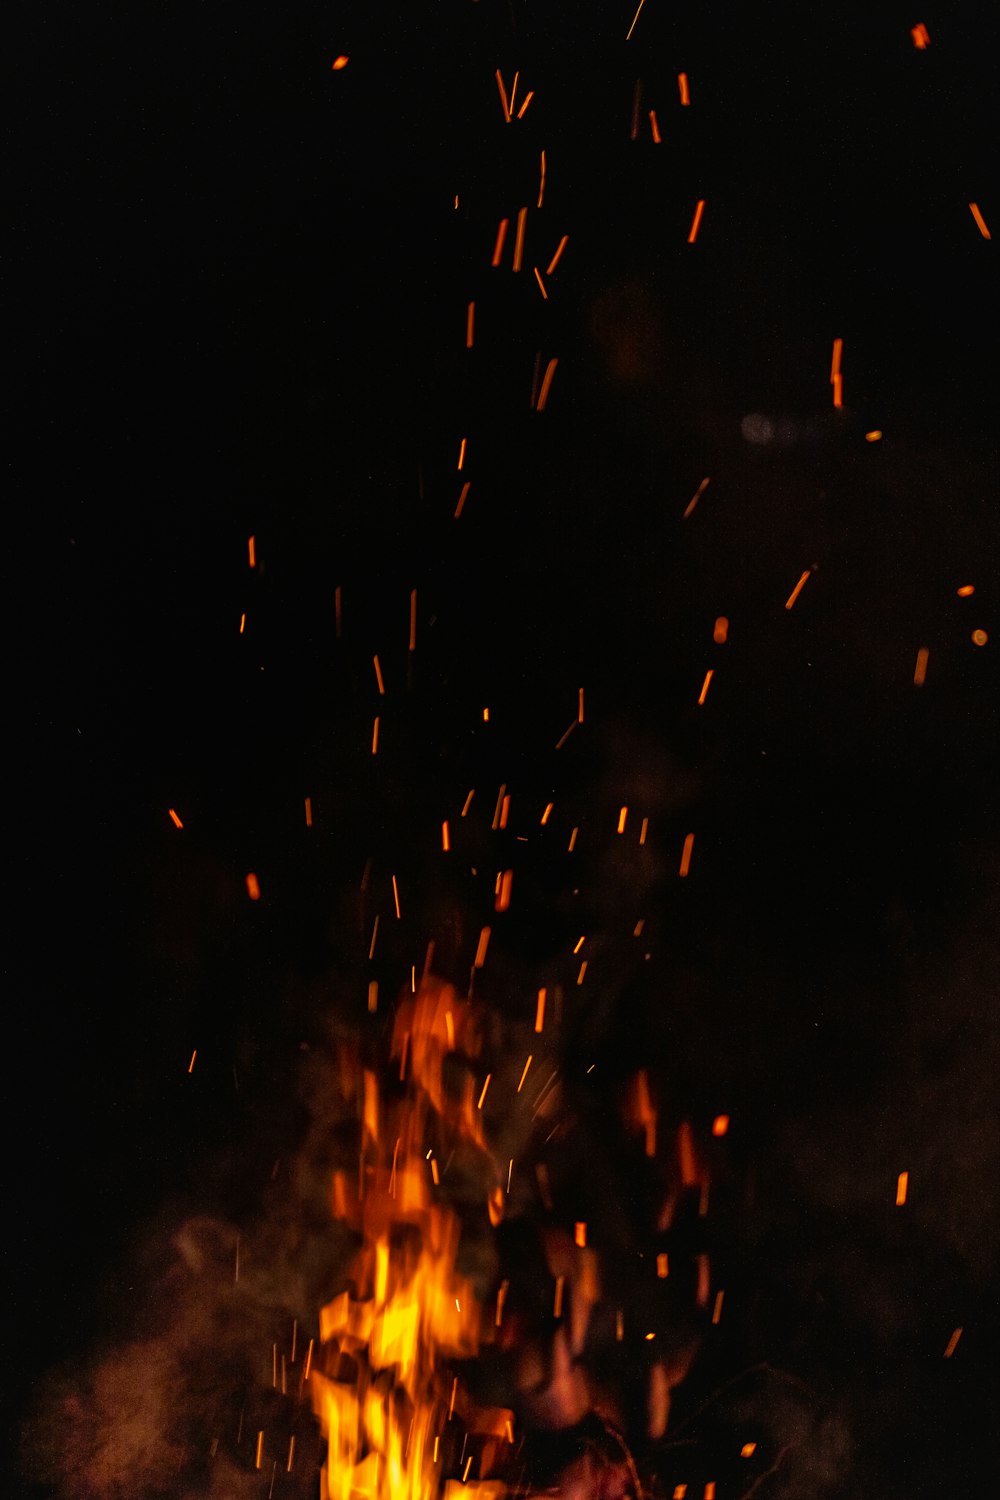 Fuegos artificiales naranjas y rojos durante la noche